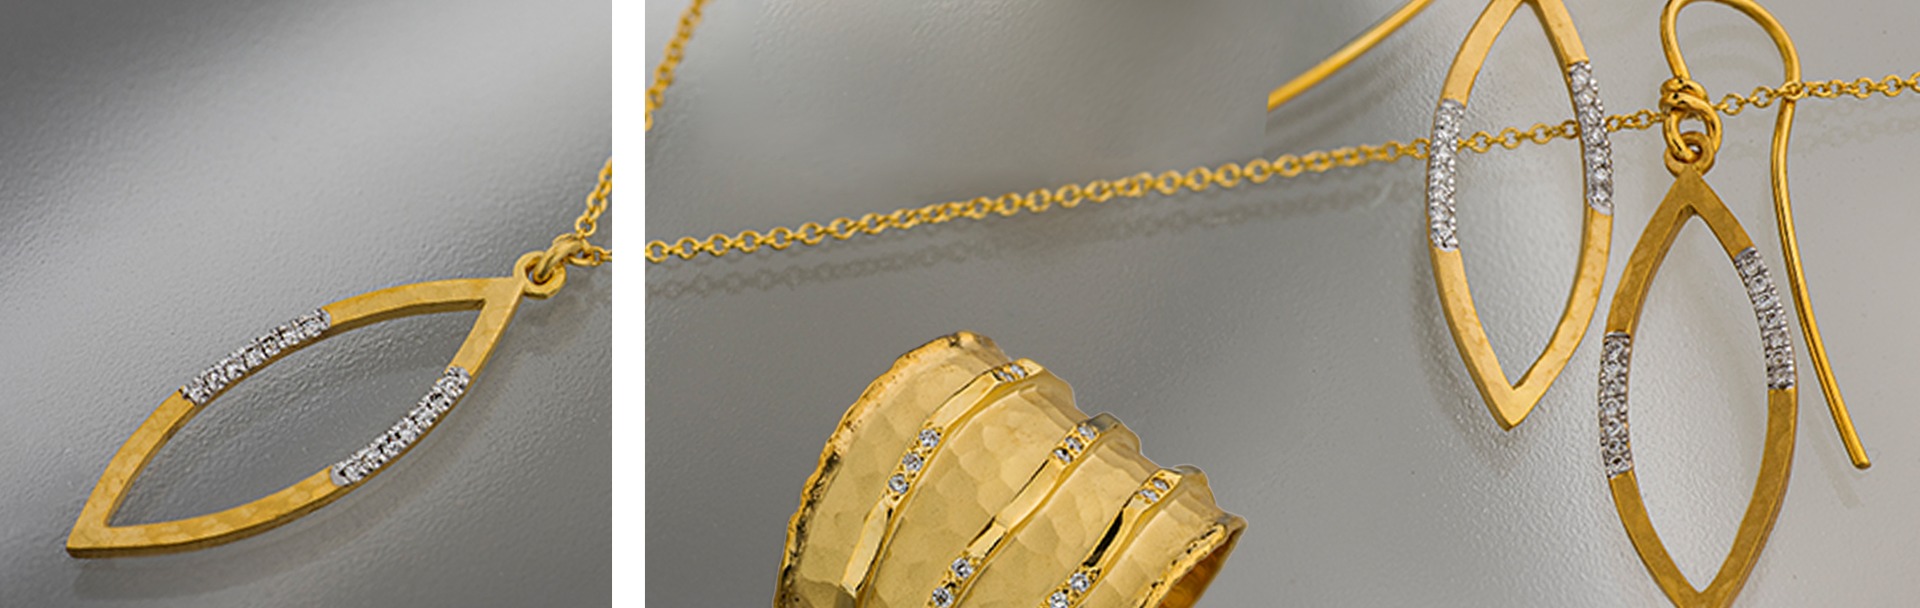 14k gold jewelry set with Diamonds